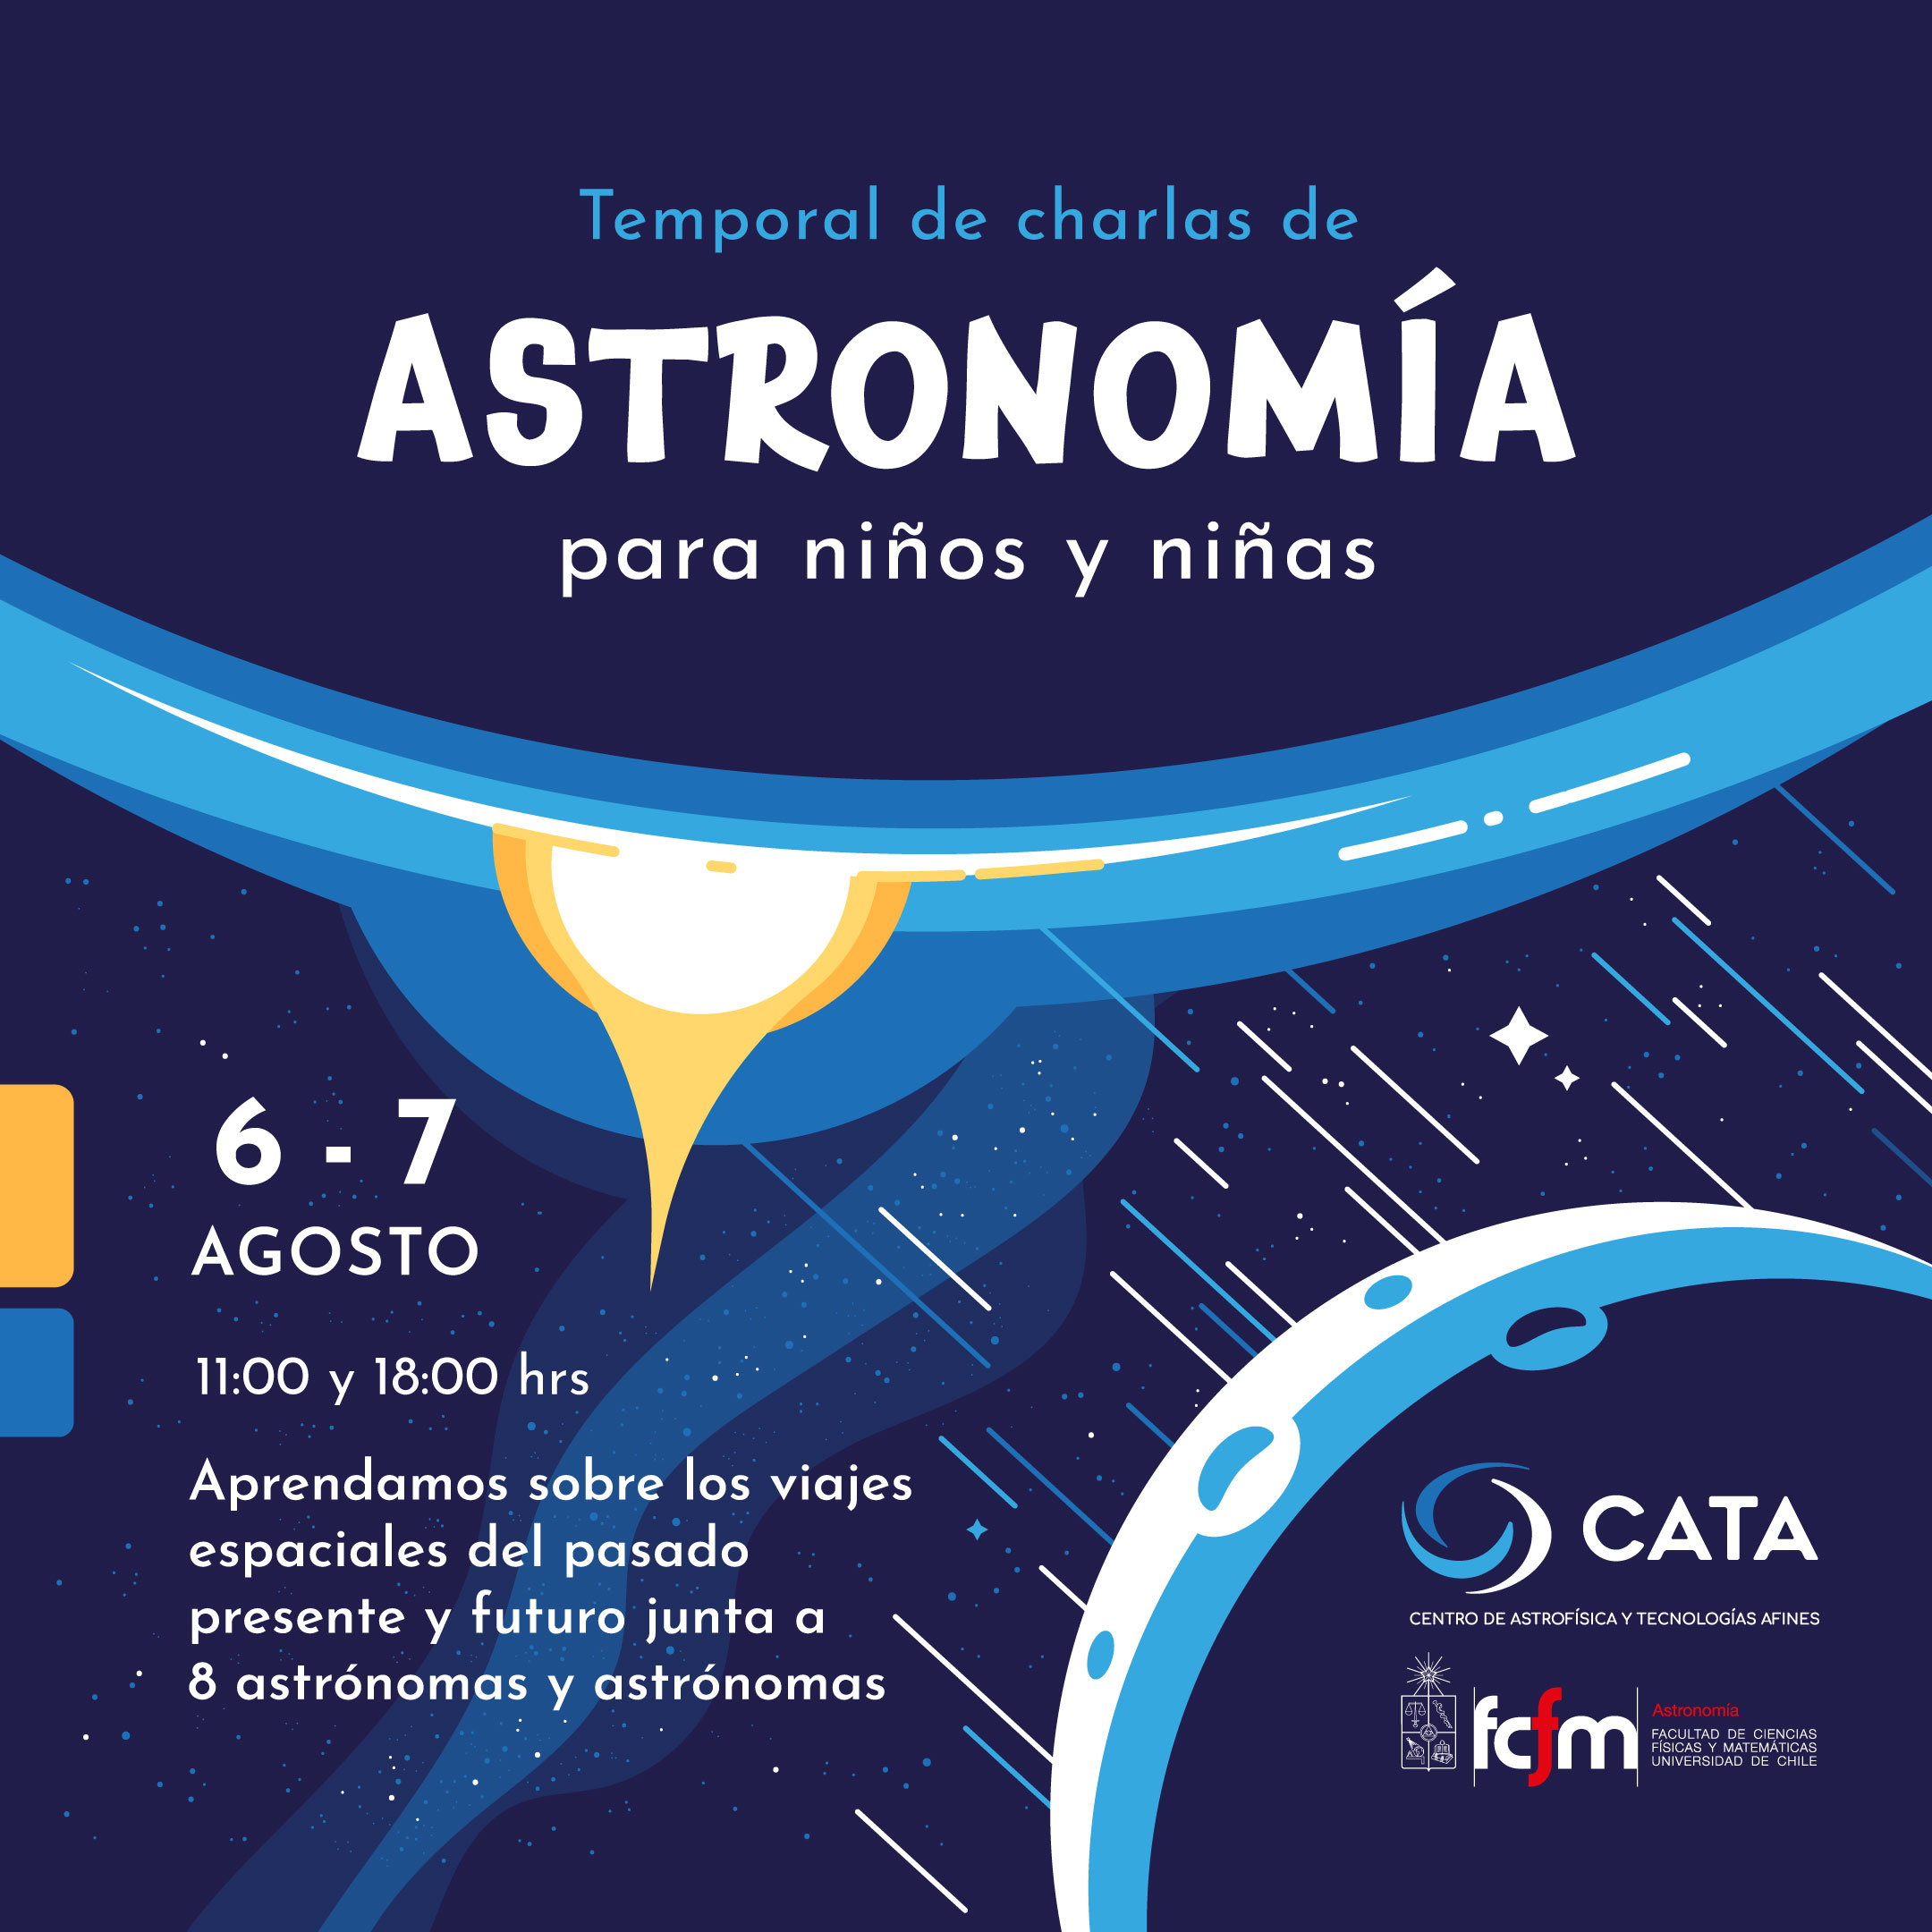  Un Temporal de charlas de astronomía online dictará la U. de Chile este fin de semana